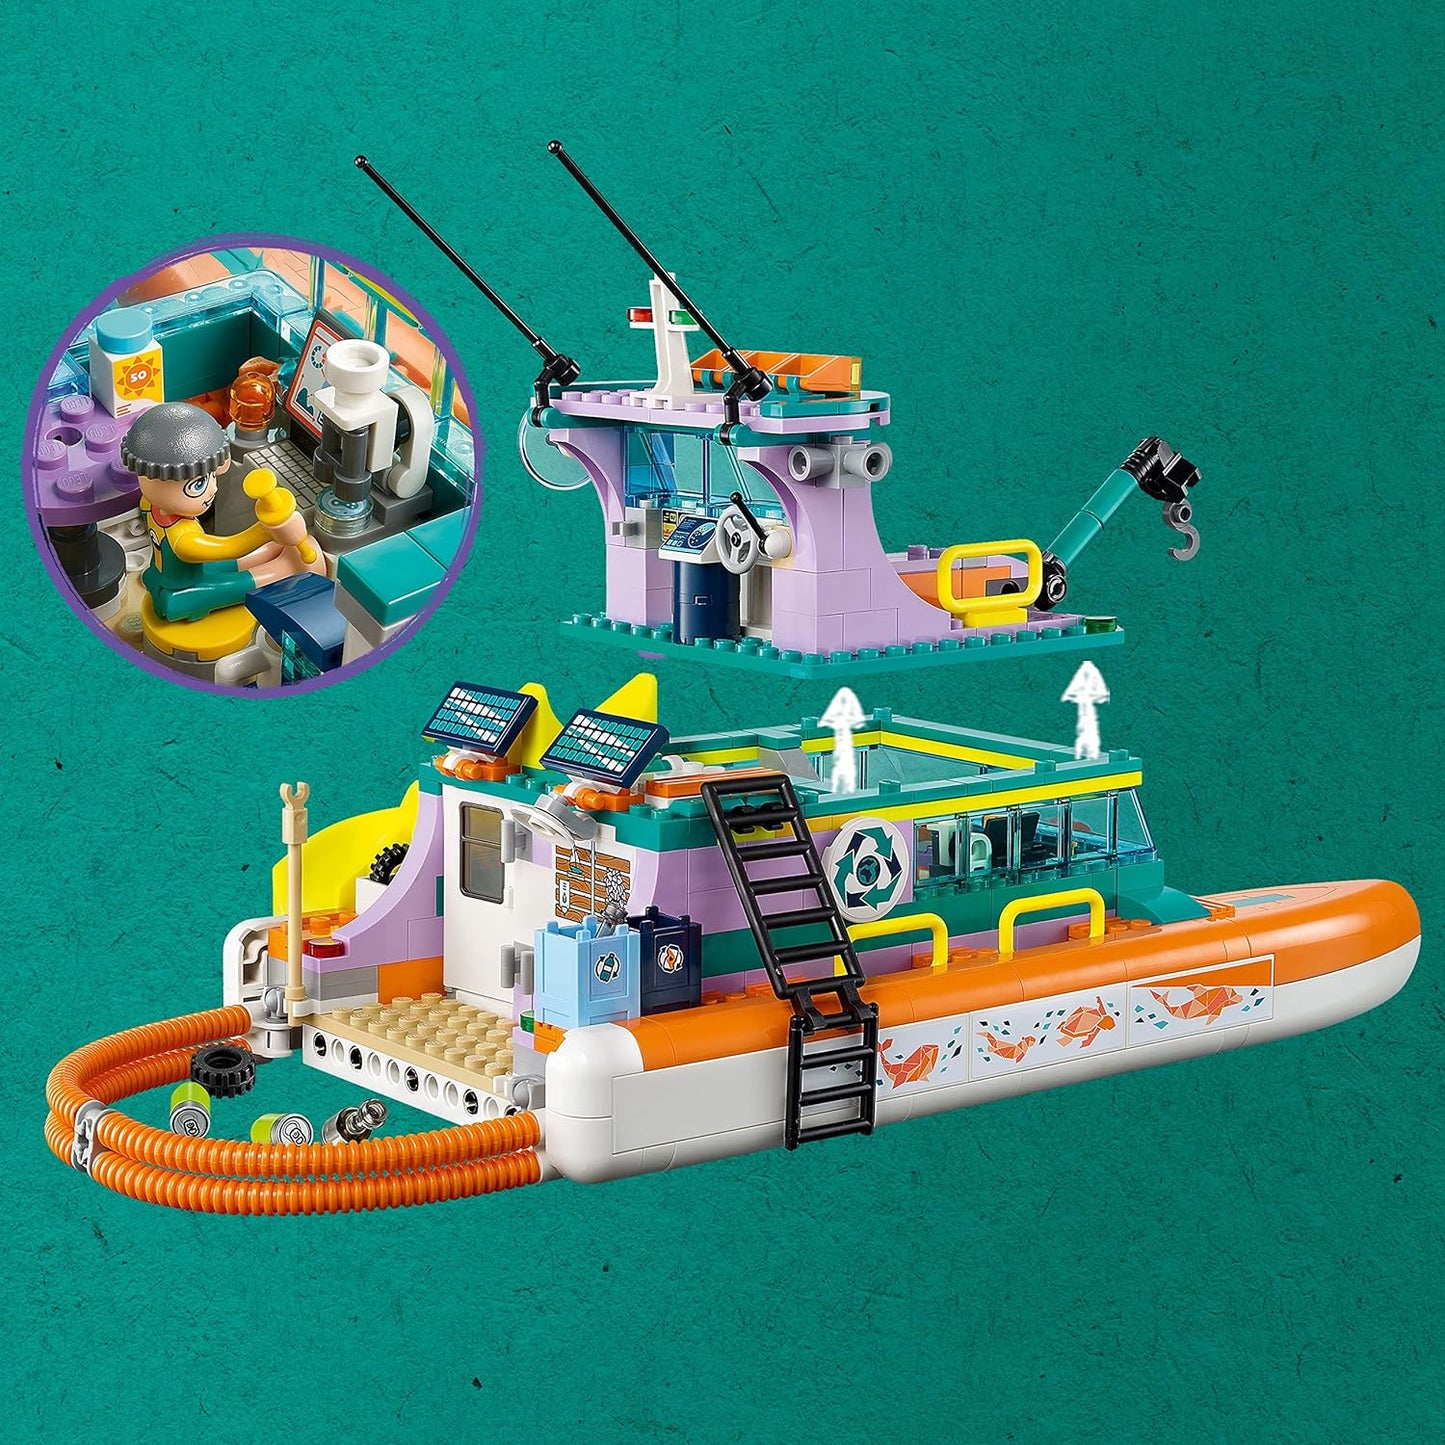 LEGO Friends - Sea Rescue Boat 41734